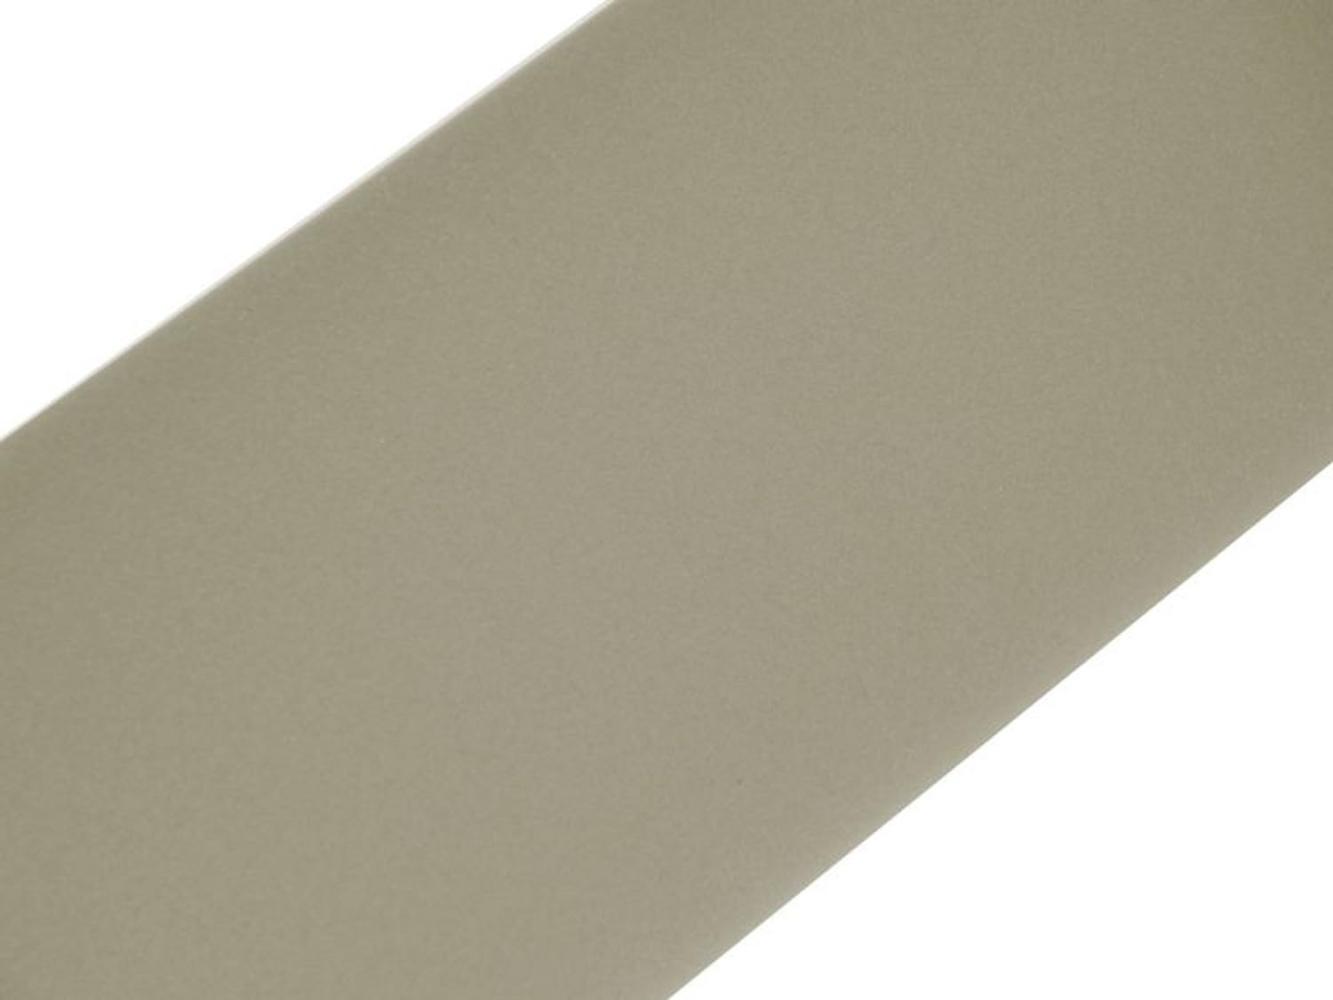 d-c-fix Klebefolie Velours grau selbstklebende Folie wasserdicht realistische Deko für Möbel, Tisch, Schrank, Tür, Küchenfronten Möbelfolie Dekofolie Tapete 45 cm x 5 m Bild 1